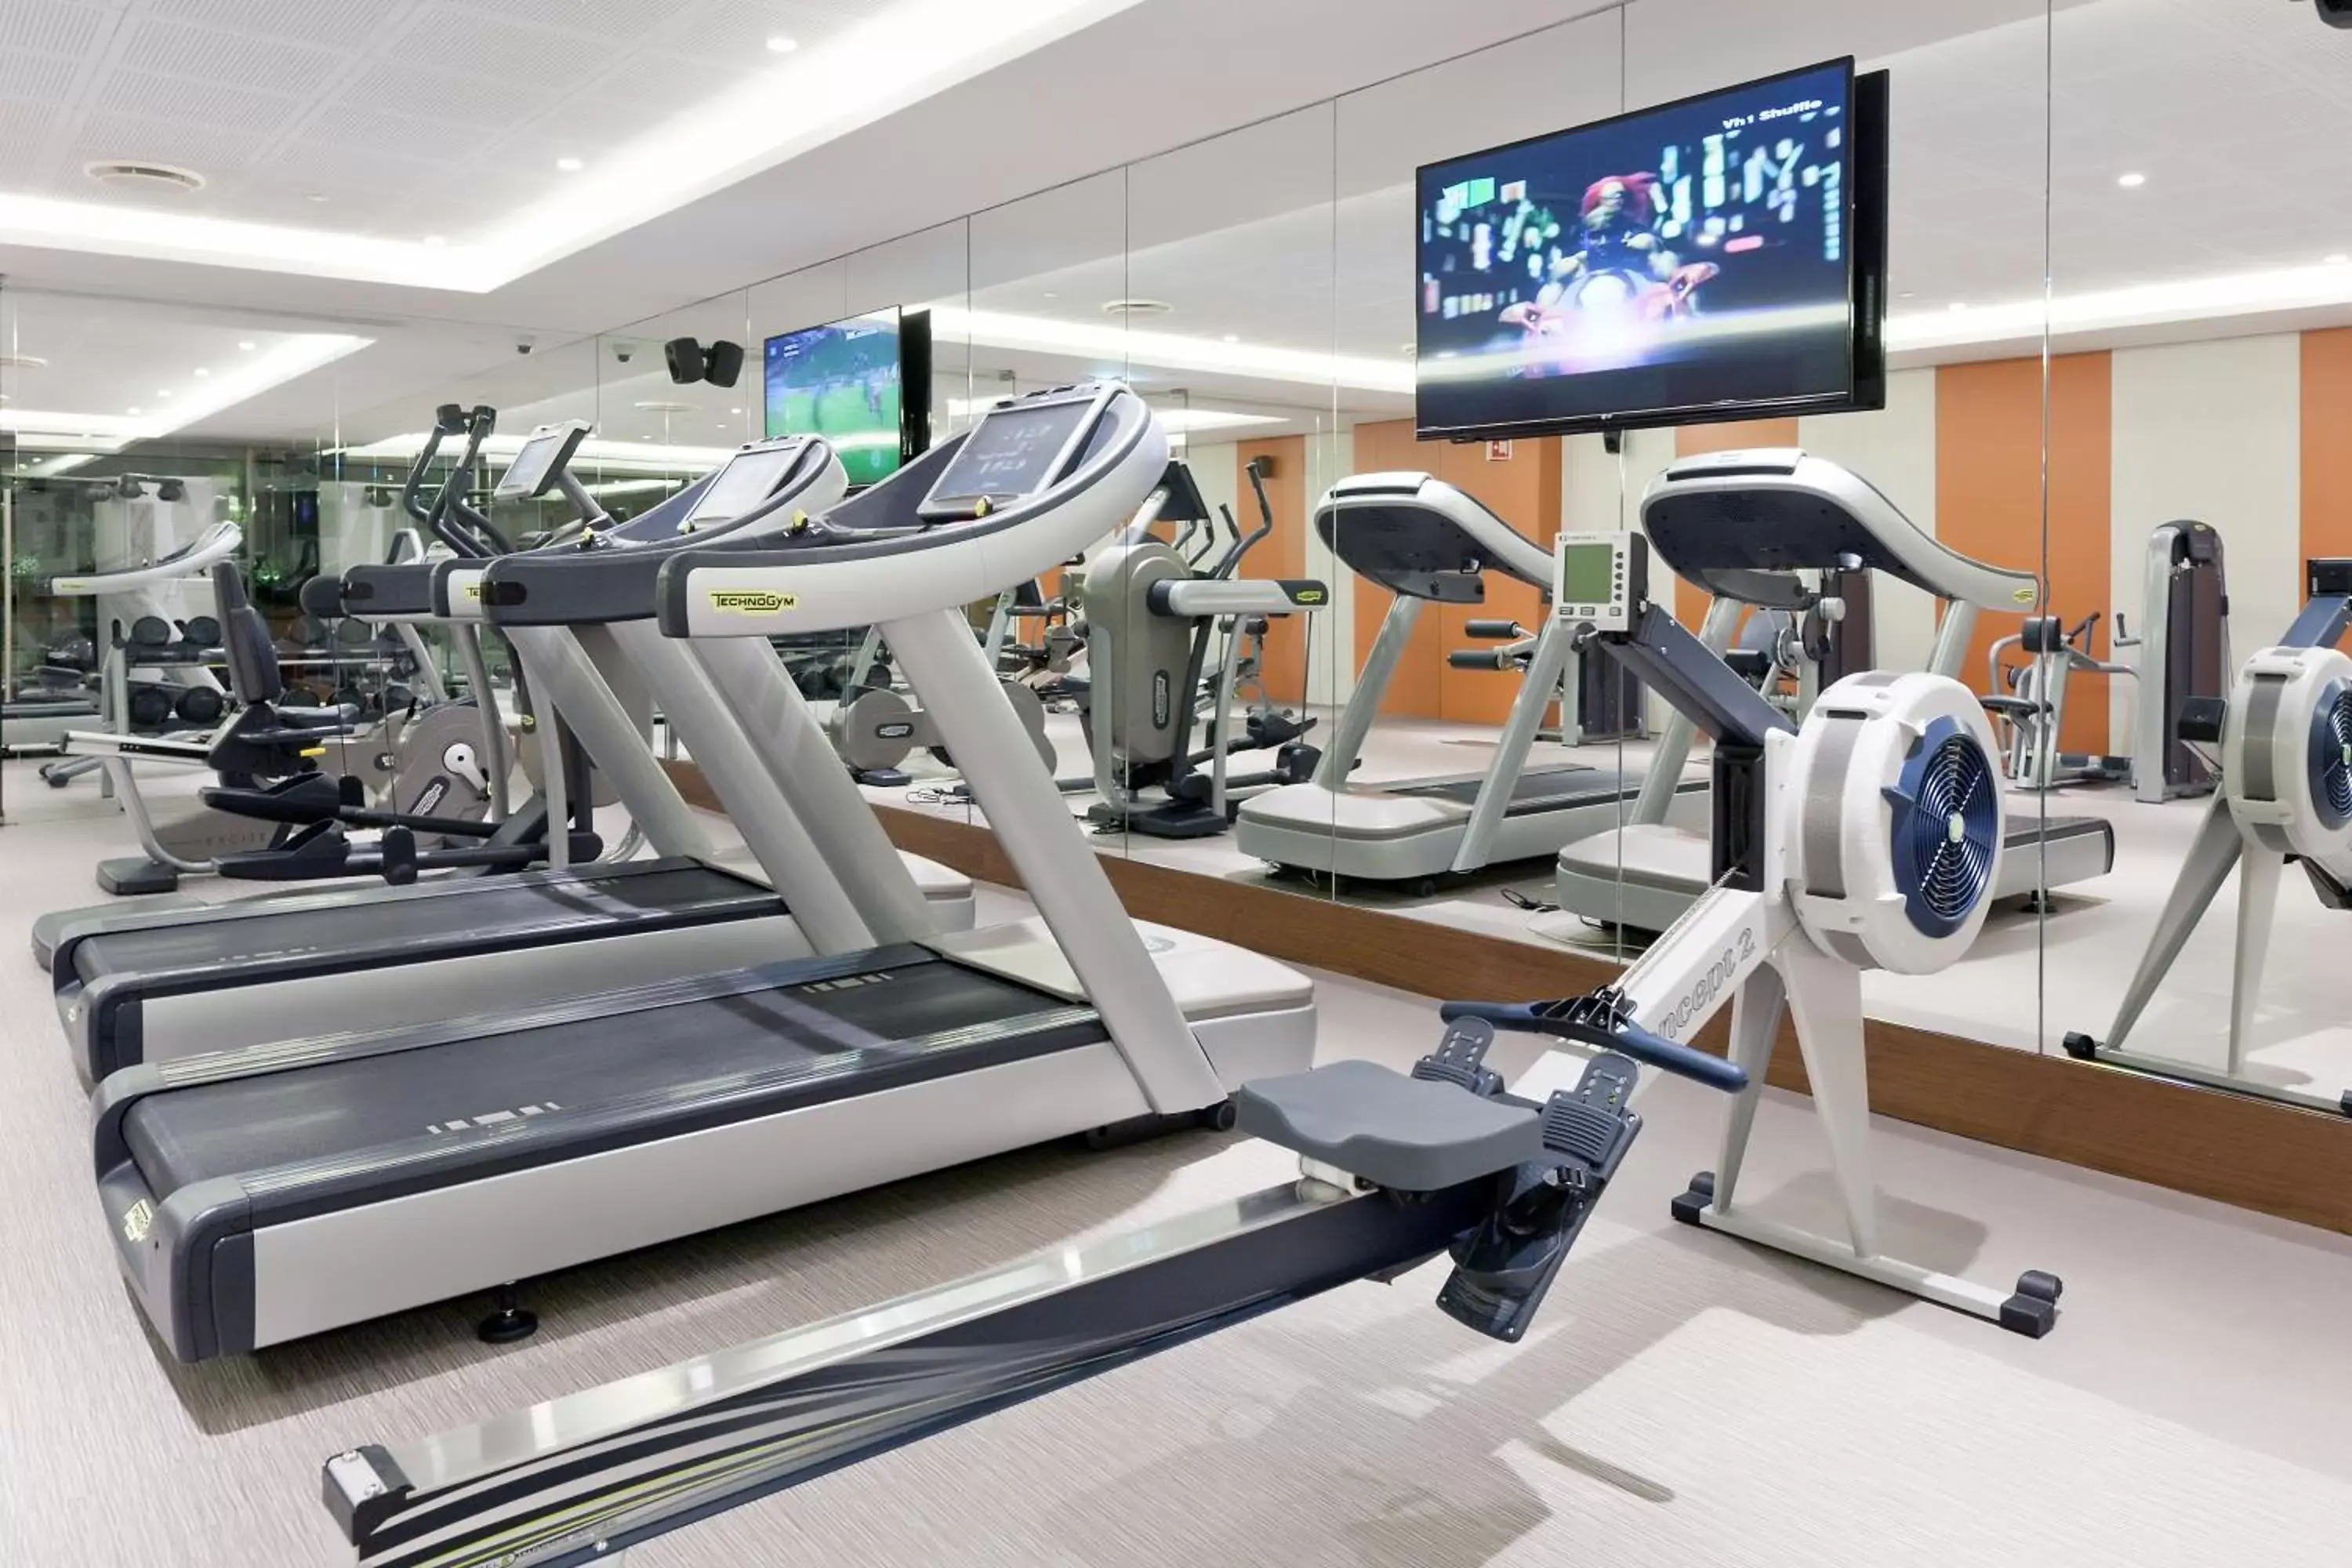 Fitness centre/facilities, Fitness Center/Facilities in EPIC SANA Lisboa Hotel